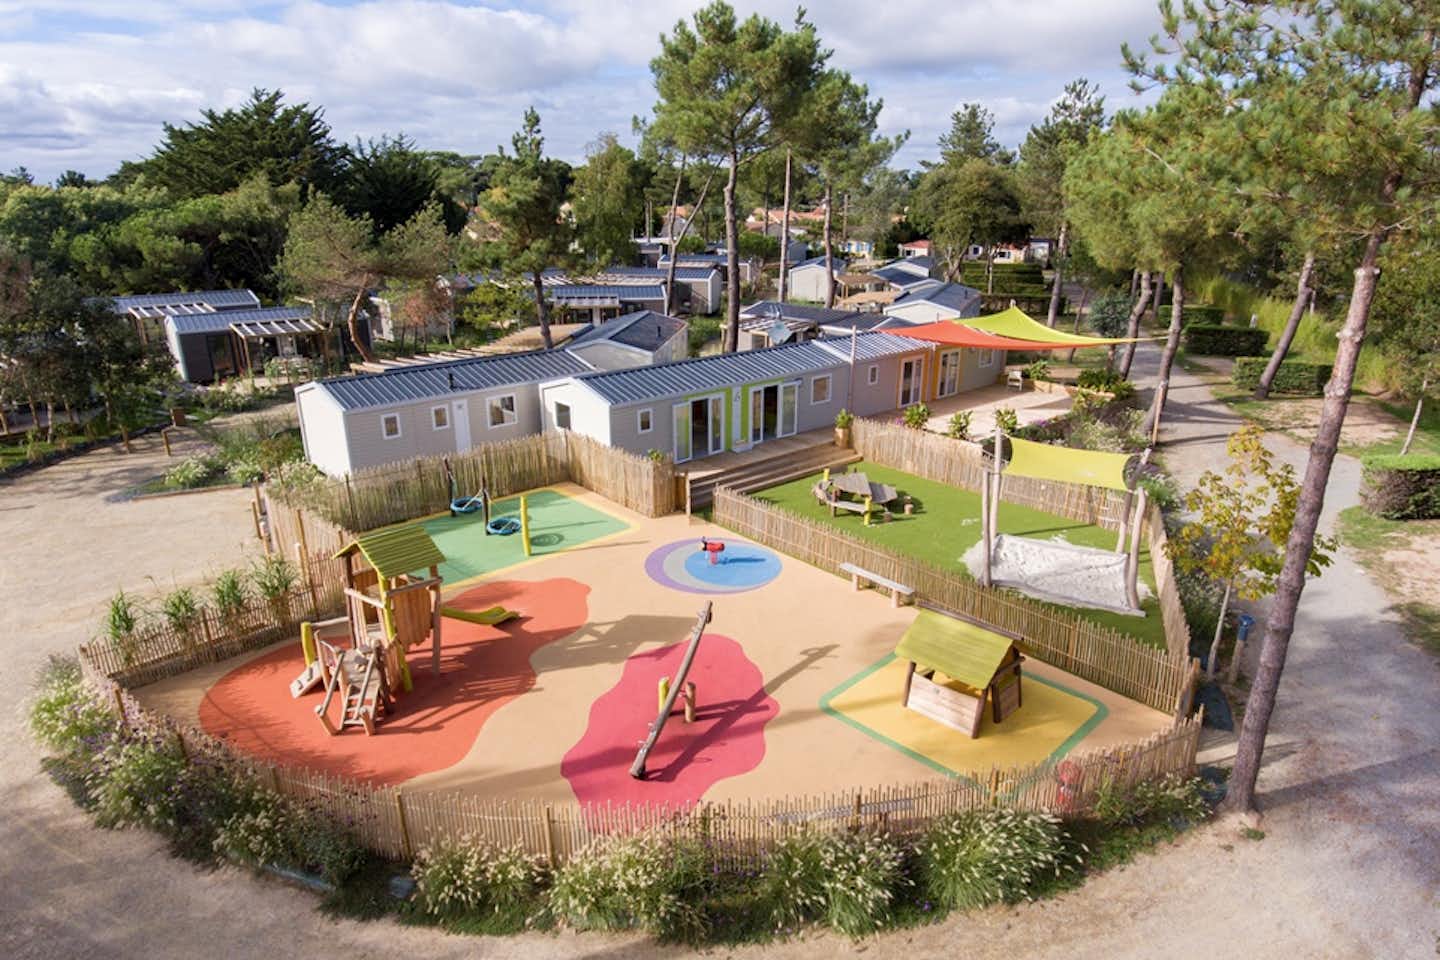 Sunêlia Le Fief  -  Spielplatz  und Mobilheime auf dem Campingplatz